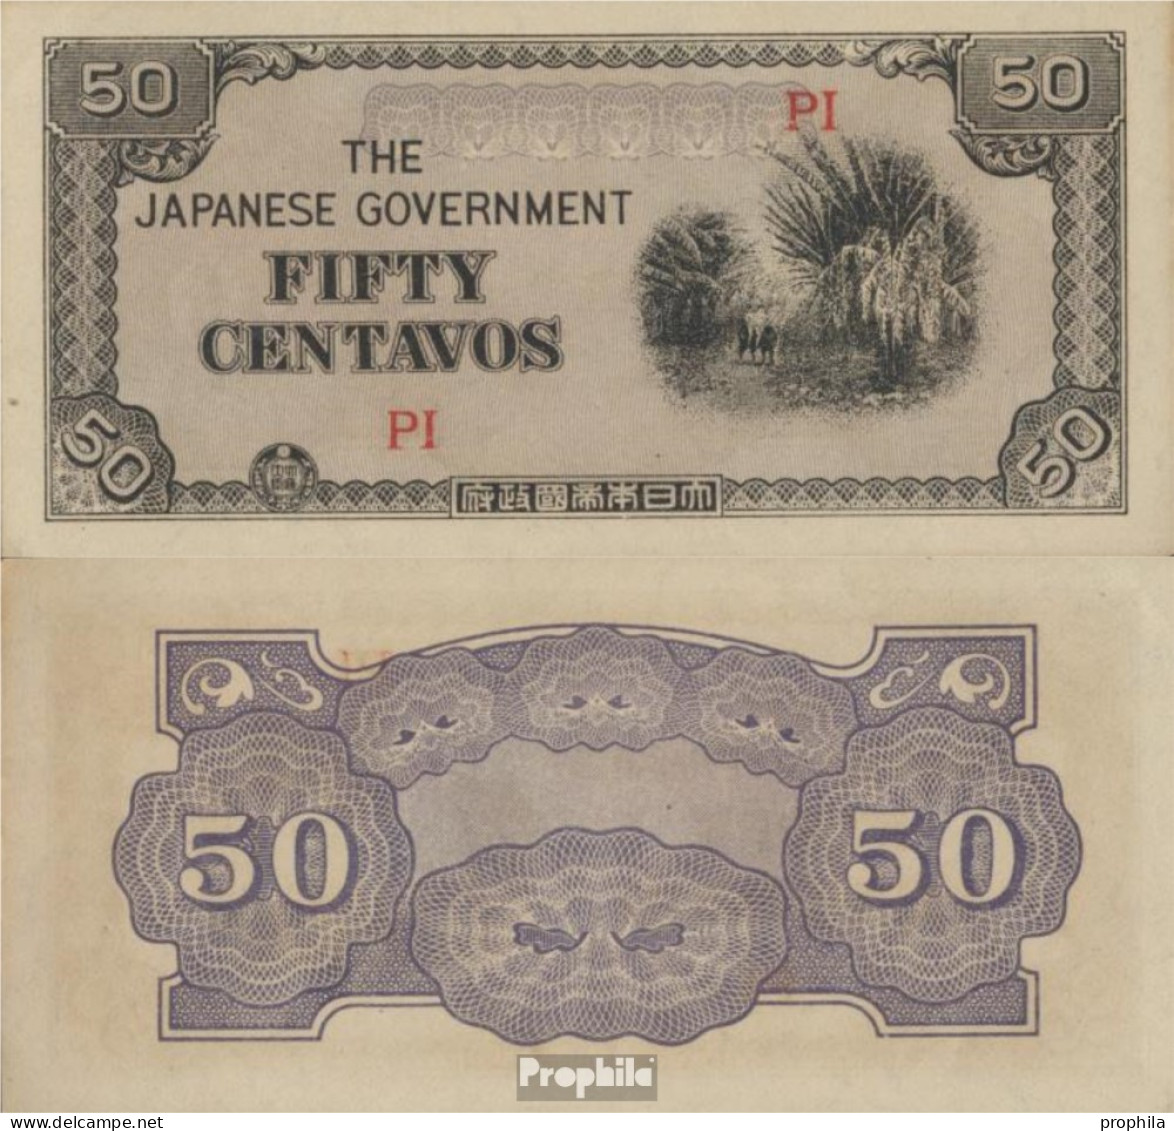 Philippinen Pick-Nr: 105b Bankfrisch 1942 50 Centavos - Philippinen